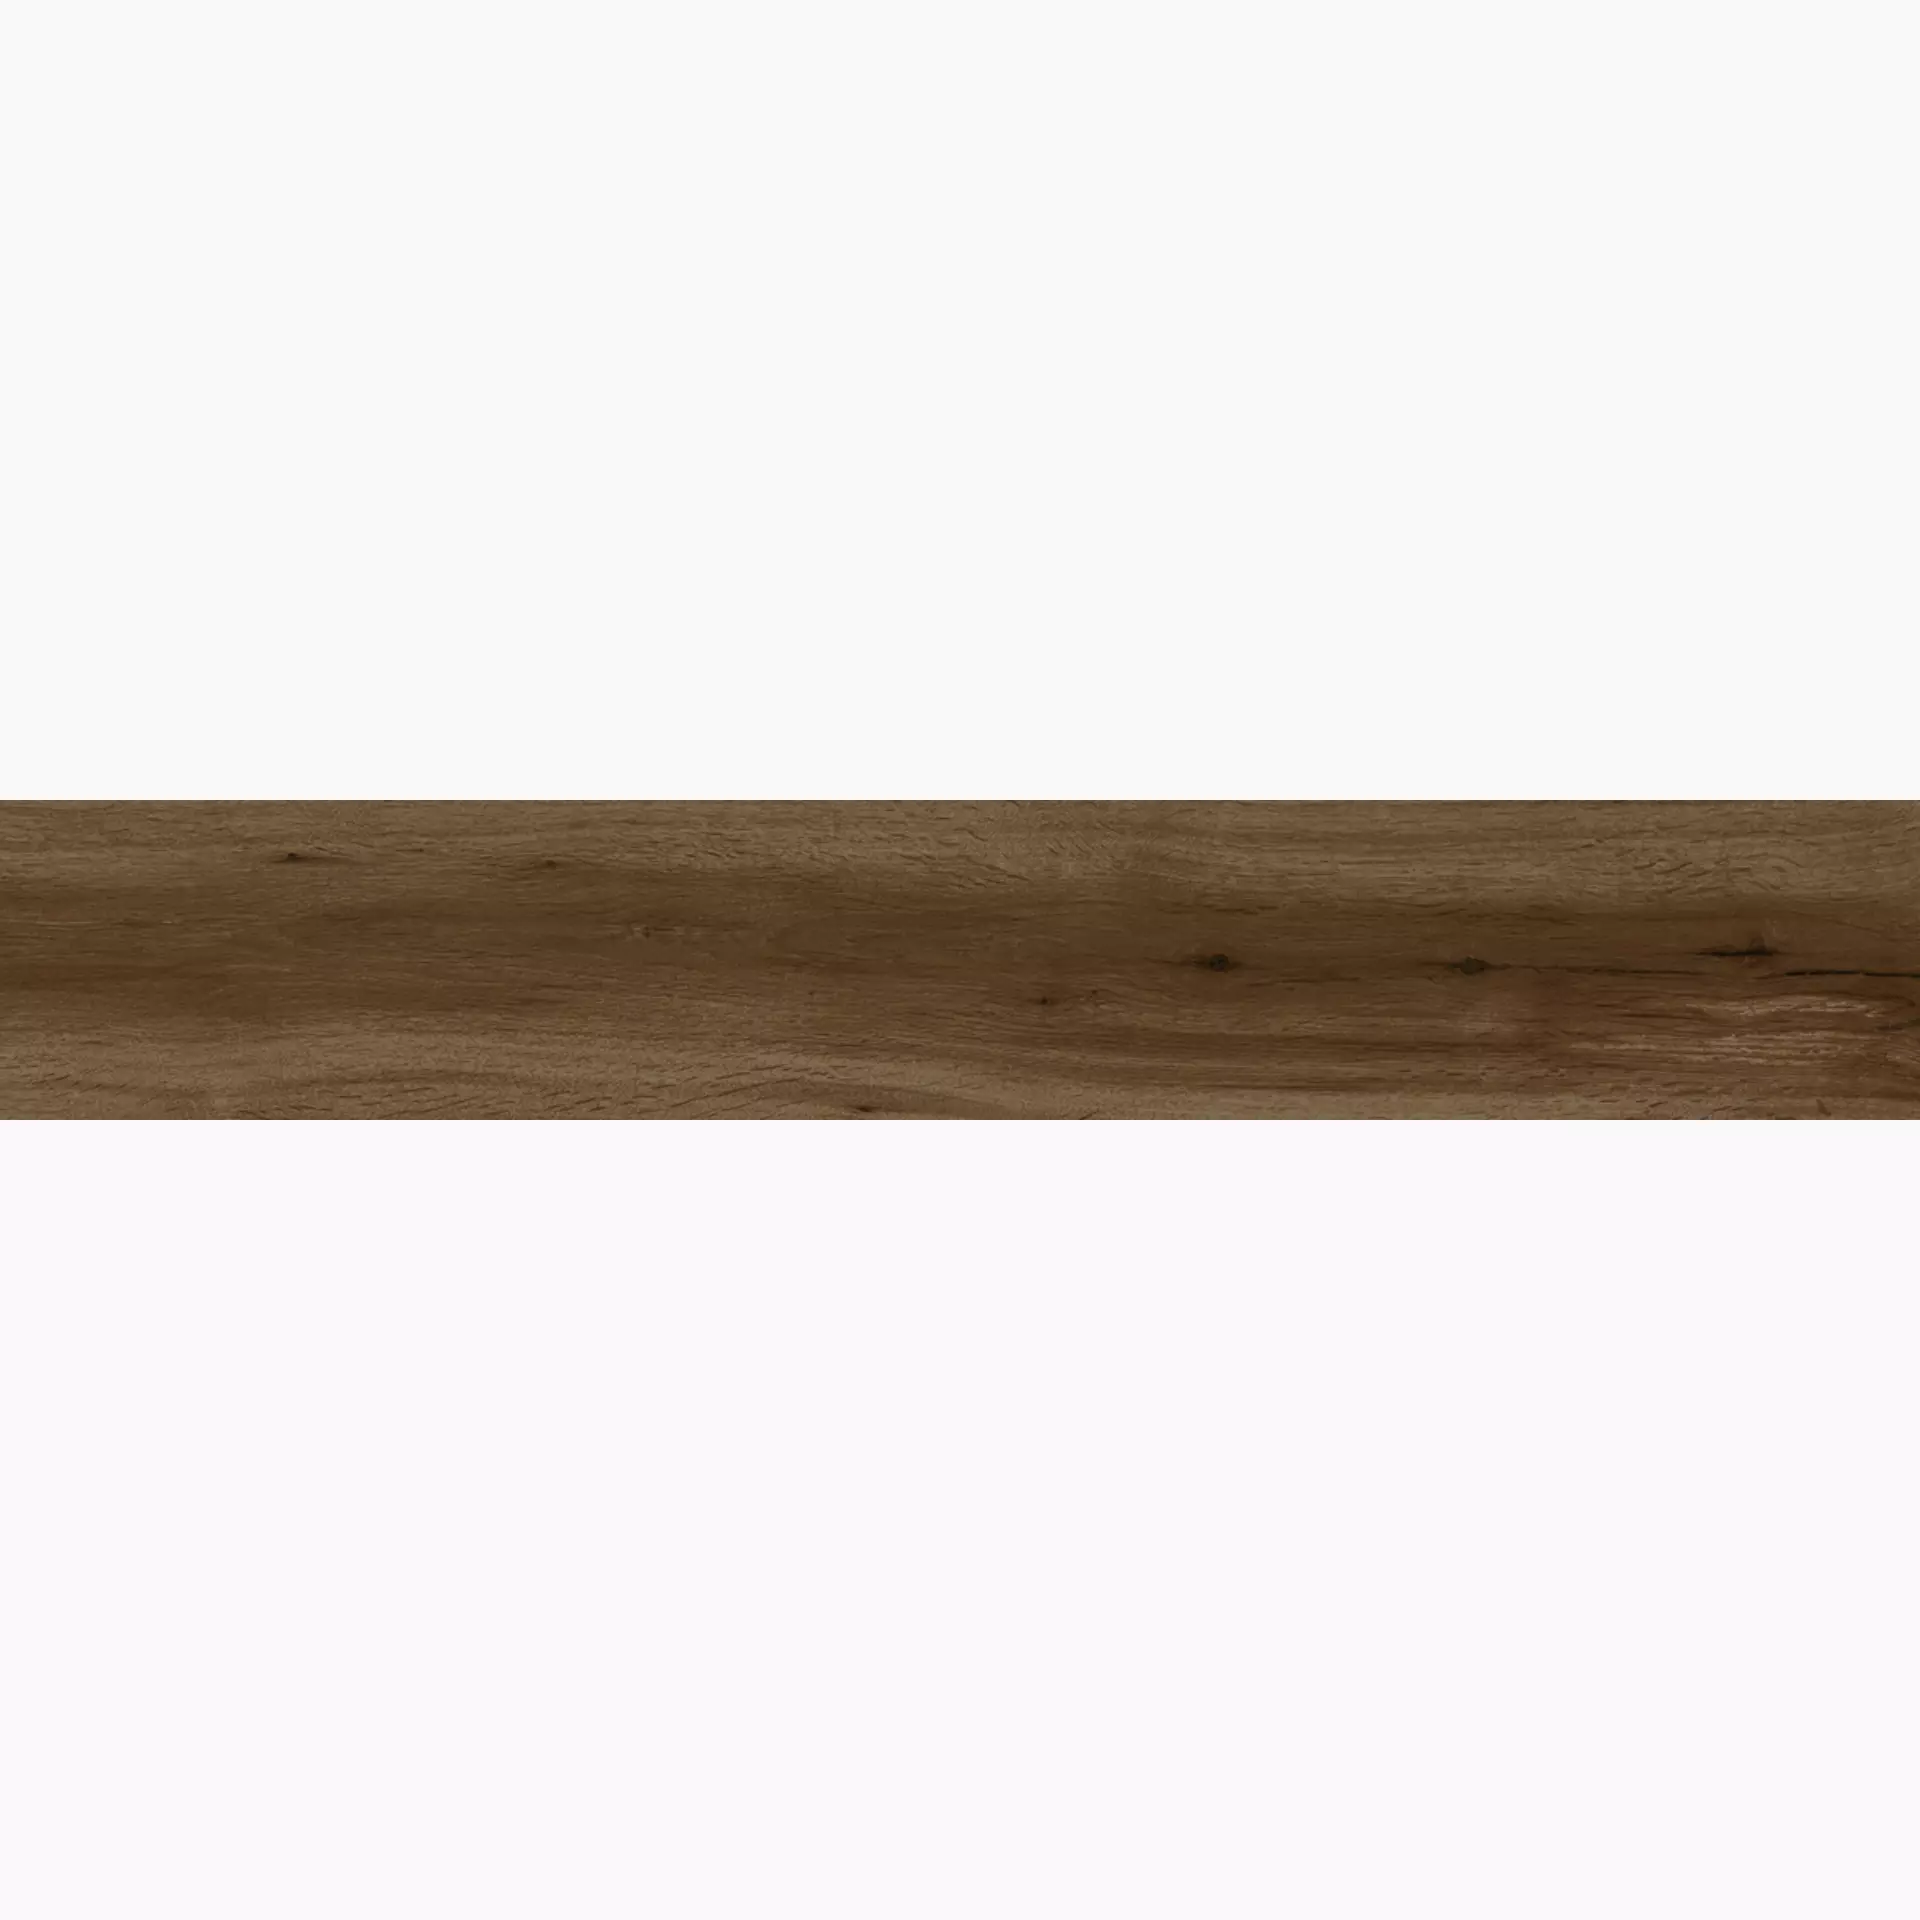 Bodenfliese,Wandfliese Marazzi Treverkheart Brown Grip Brown M162 grip 15x90cm 8mm